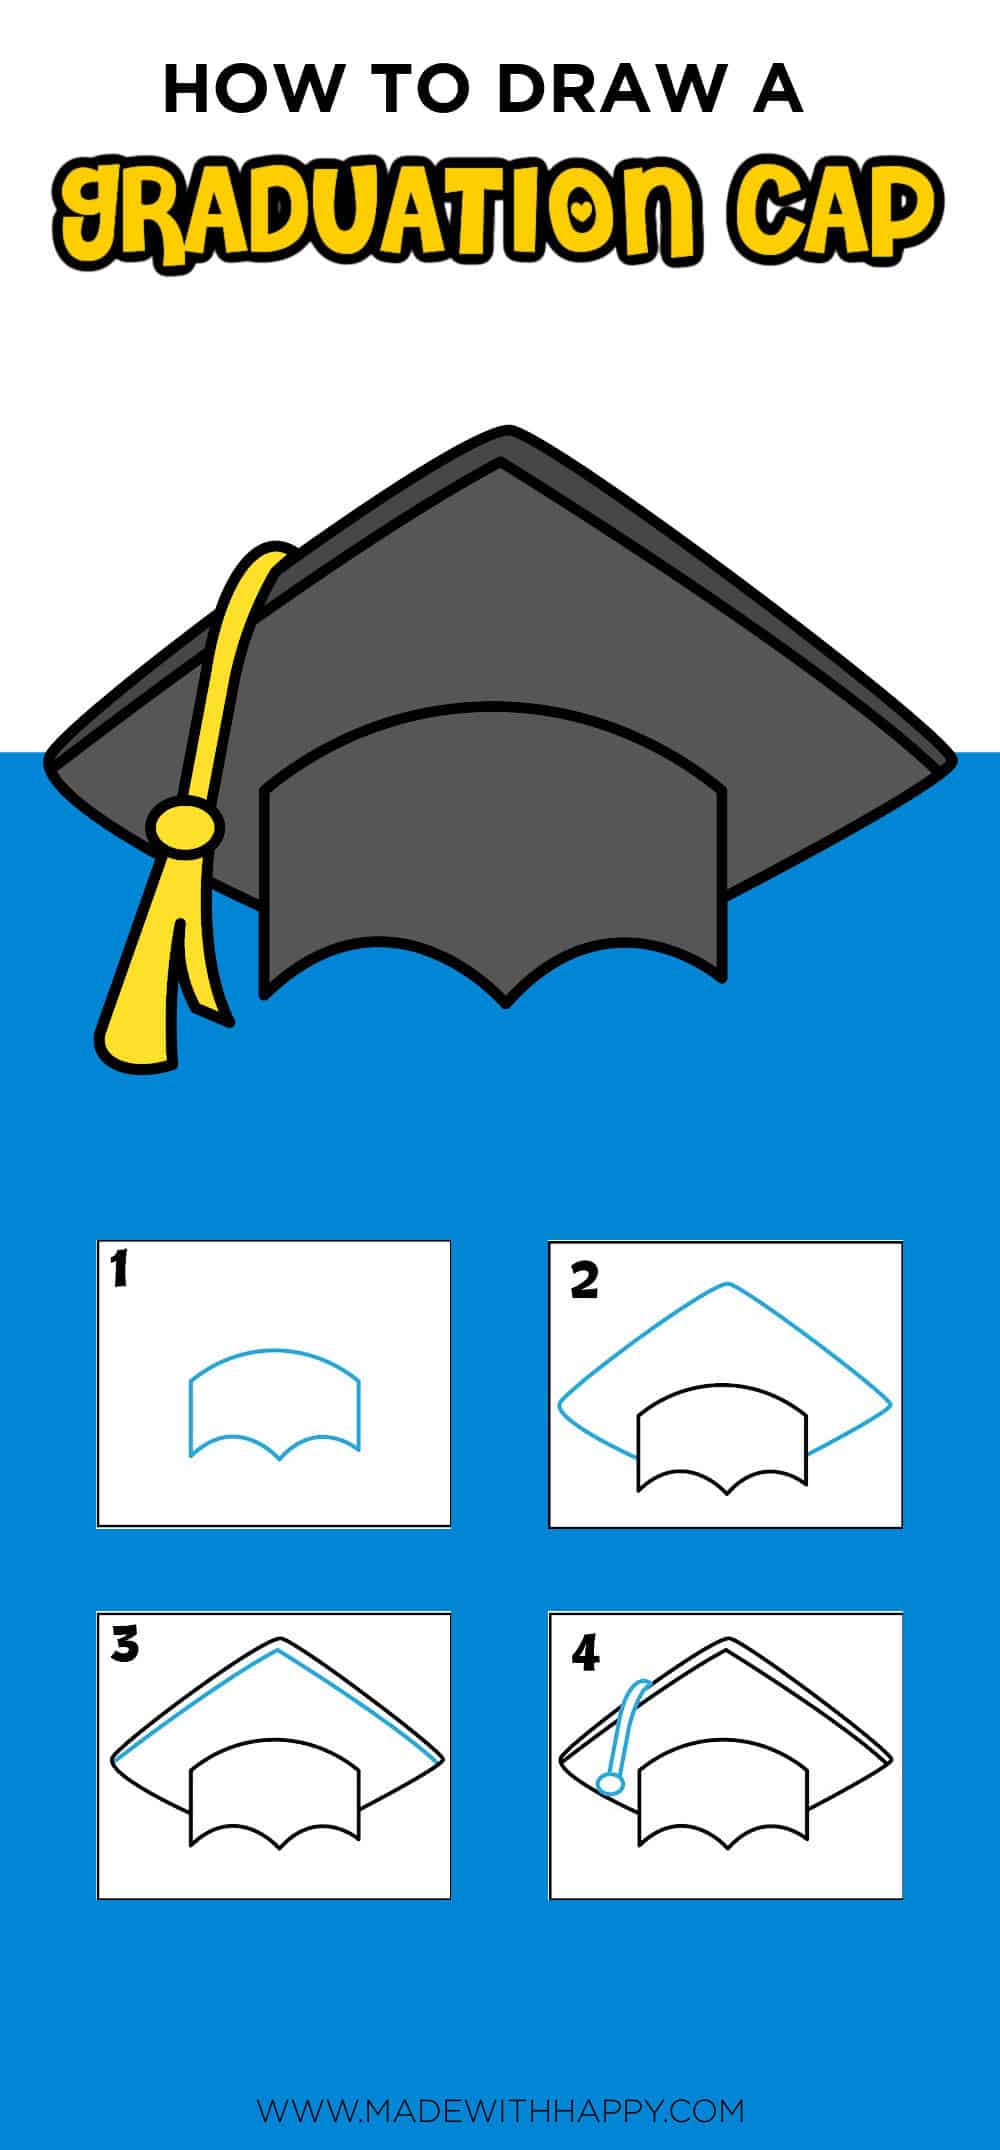 Drawing a graduation cap